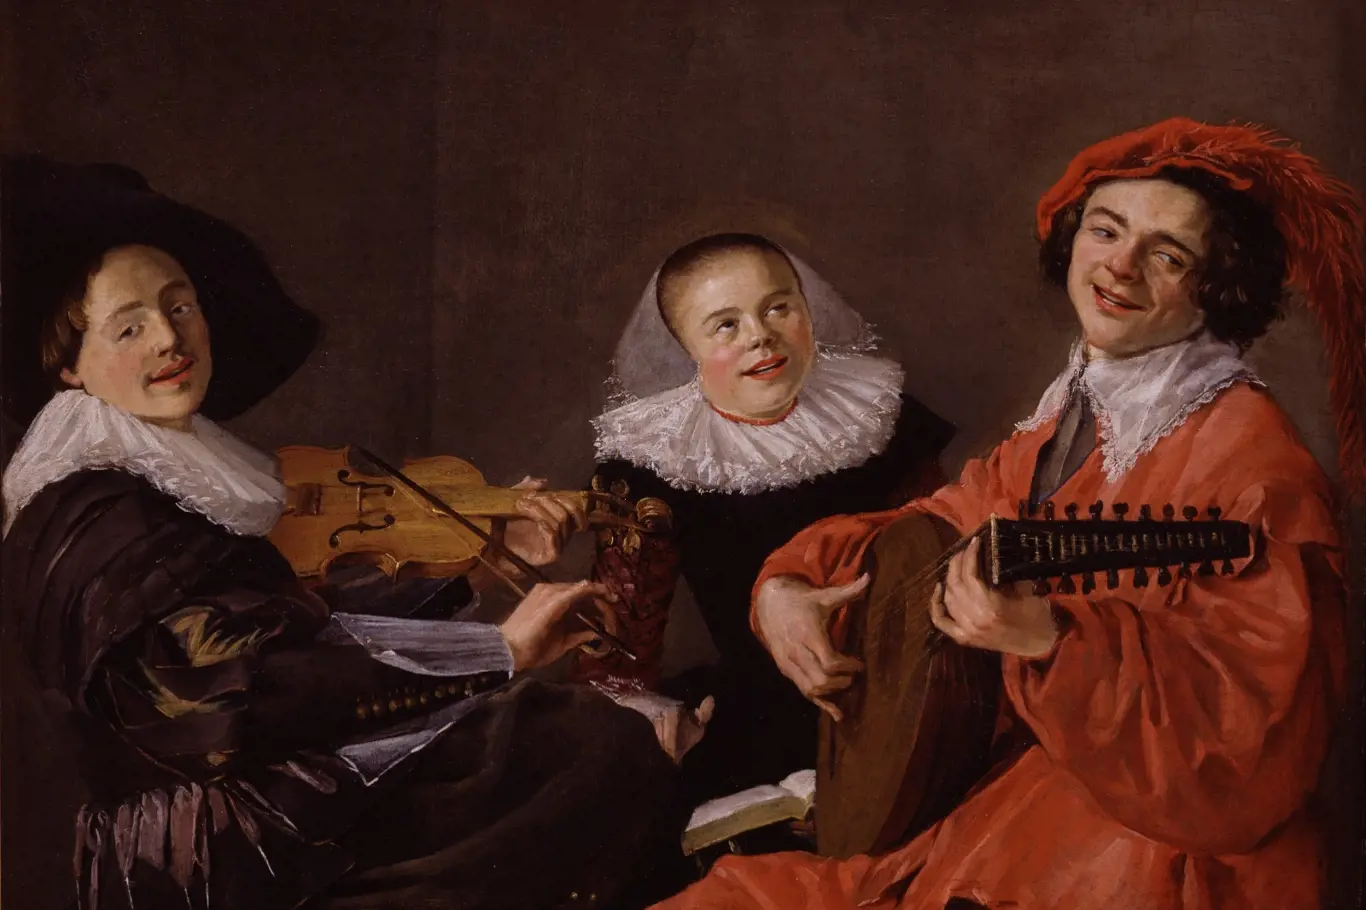 Obraz "Koncert" nizozemské malířky Judith Leysterové se stal jedním z nejslavnějších zobrazení "lidské spodiny" 17. století. Zuby odhalené v úsměvu se v té době považovaly za typický znak nižších vrstev